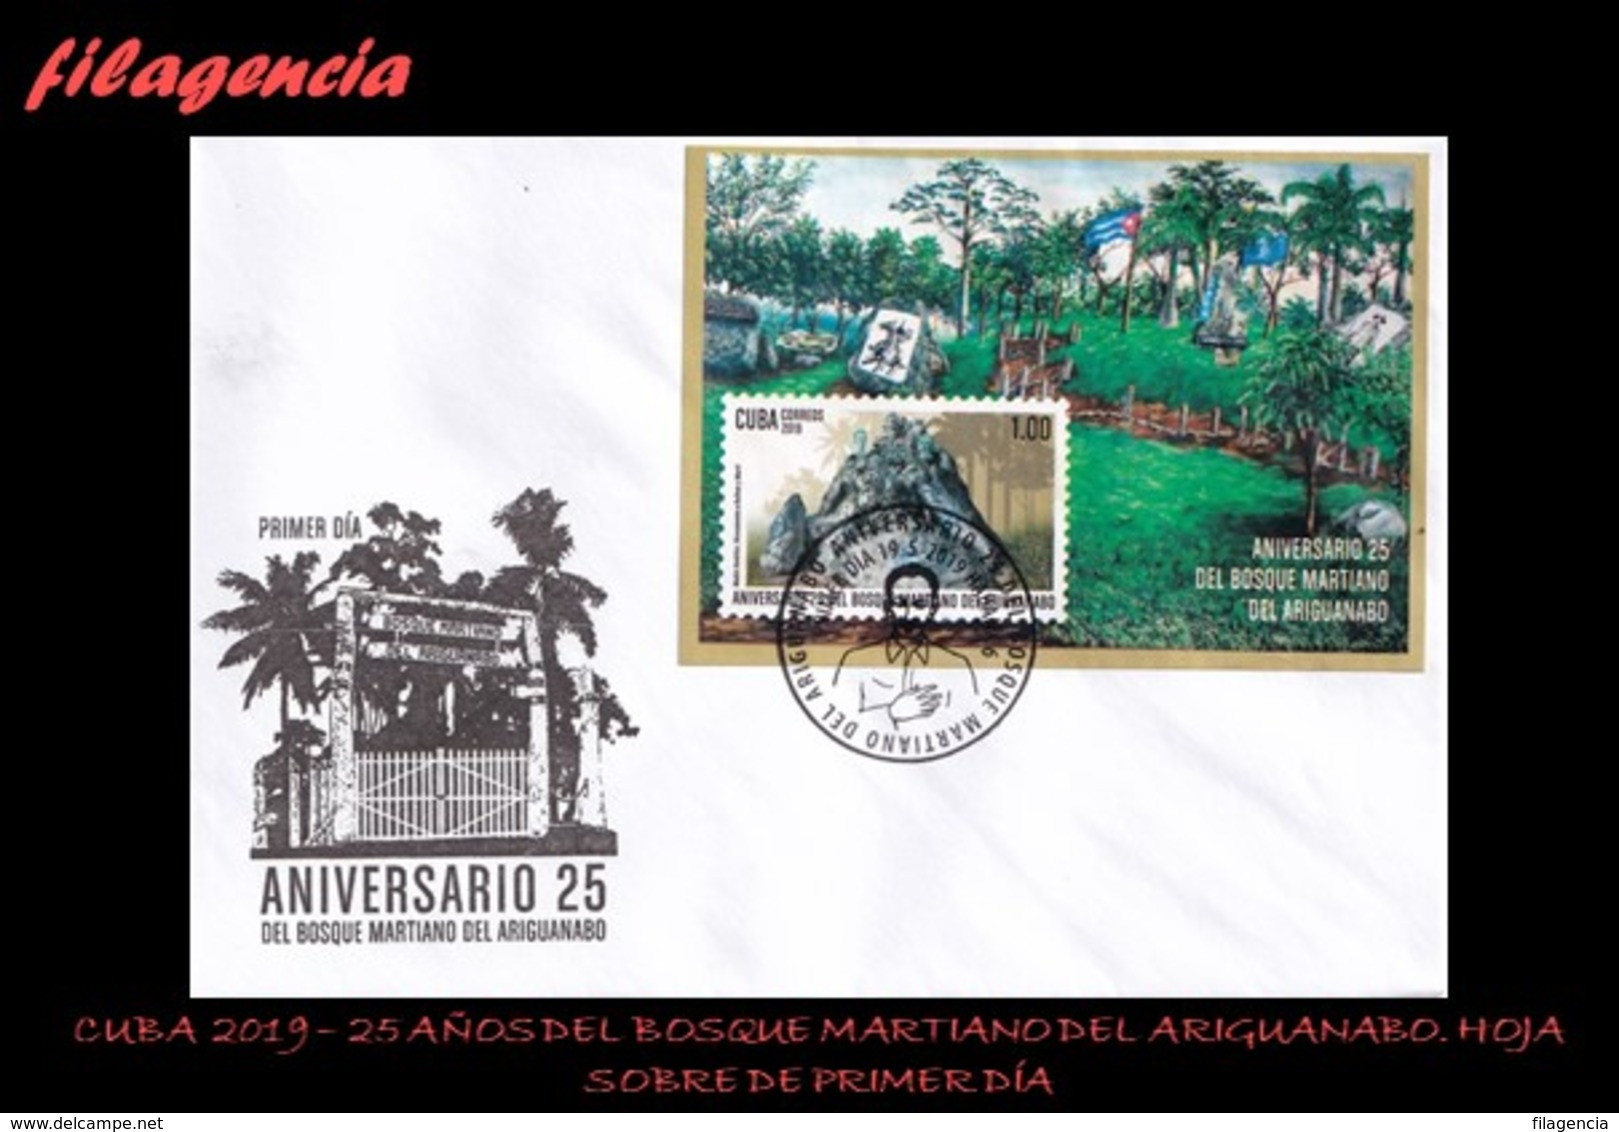 AMERICA. CUBA SPD-FDC. 2019 25 AÑOS DEL BOSQUE MARTIANO DEL RÍO ARIGUANABO. ÁRBOLES. HOJA BLOQUE - FDC